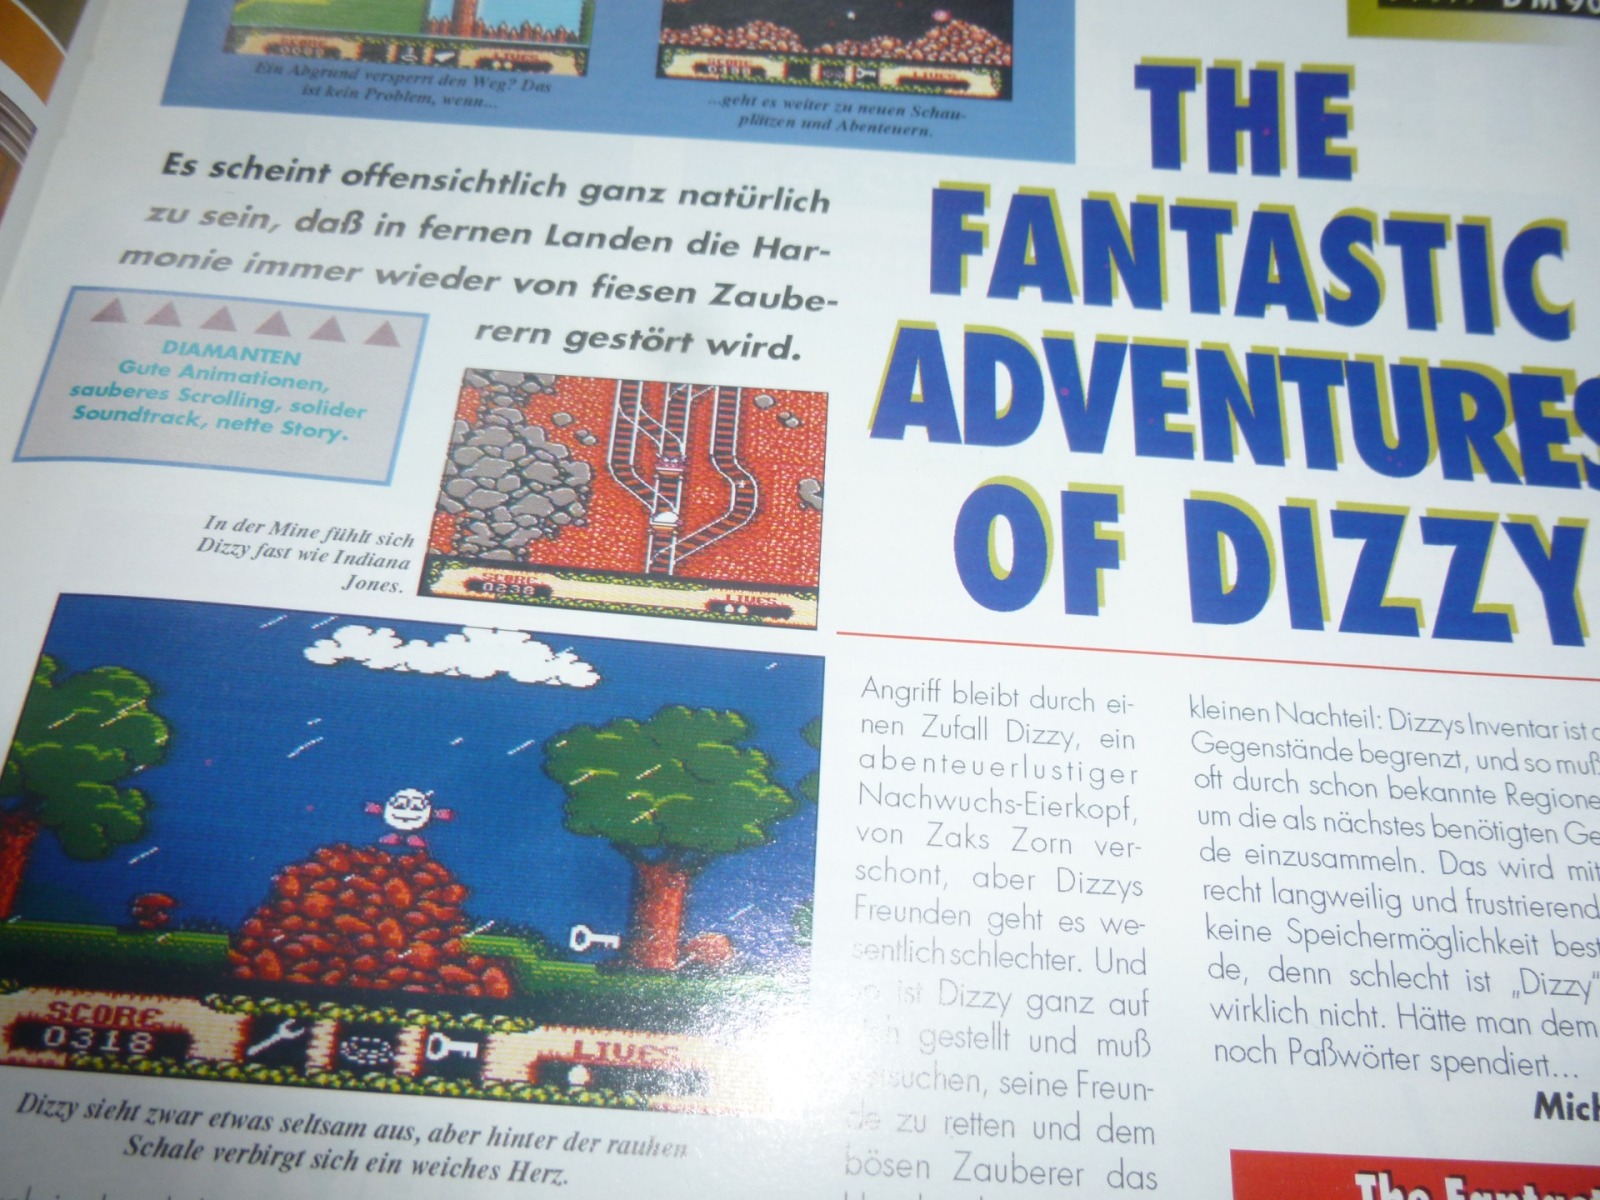 TOTAL Das unabhängige Magazin - 100 Nintendo - Ausgabe 7/93 1993 21